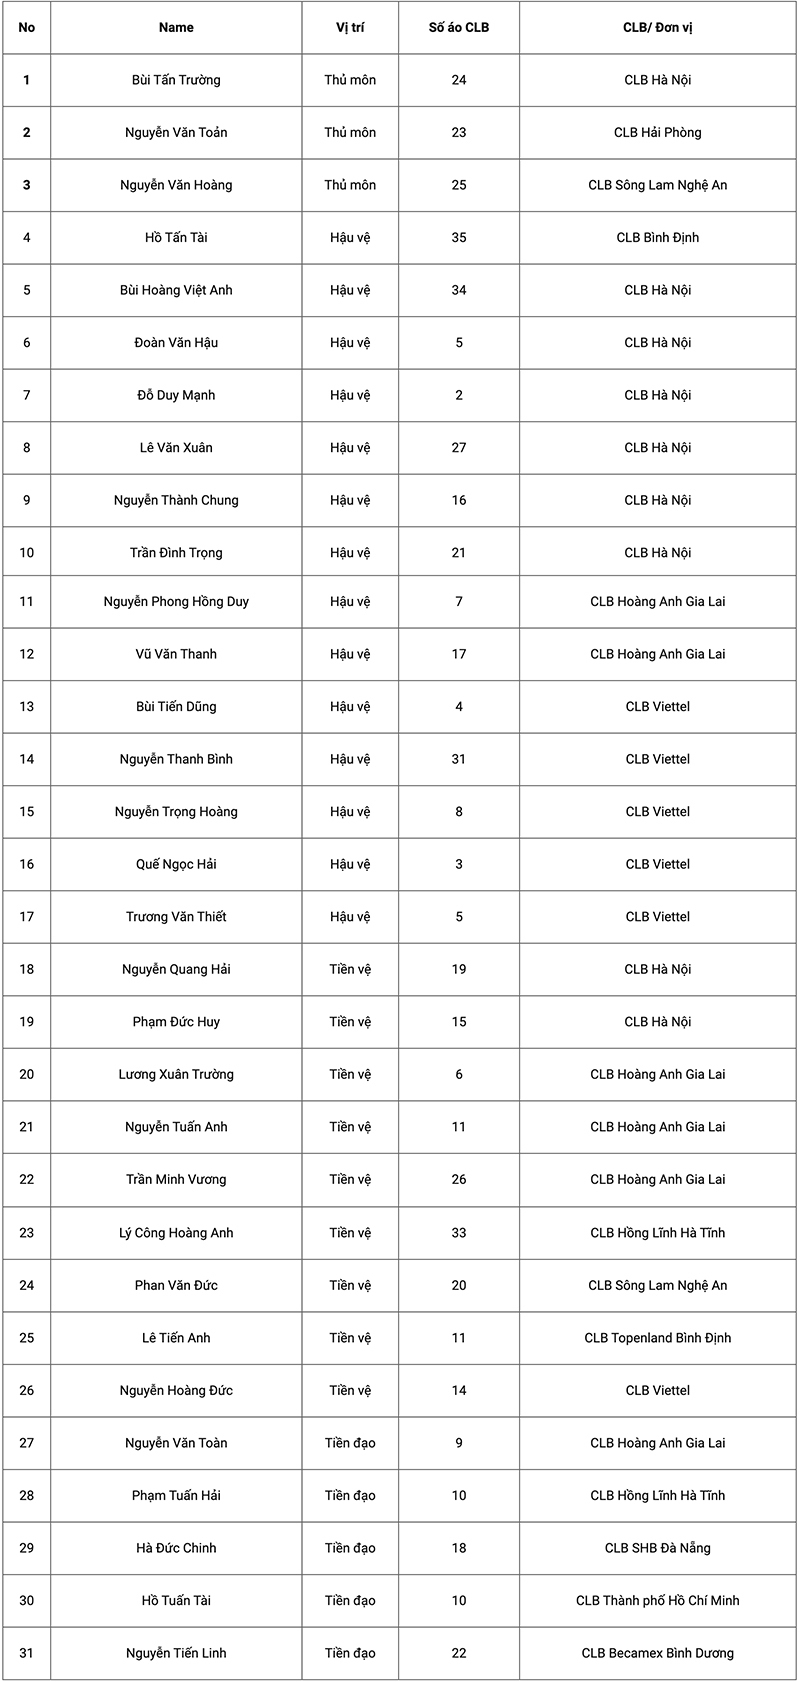  
Danh sách các cầu thủ được HLV Park Hang Seo triệu tập. (Ảnh: Kinh tế đô thị)